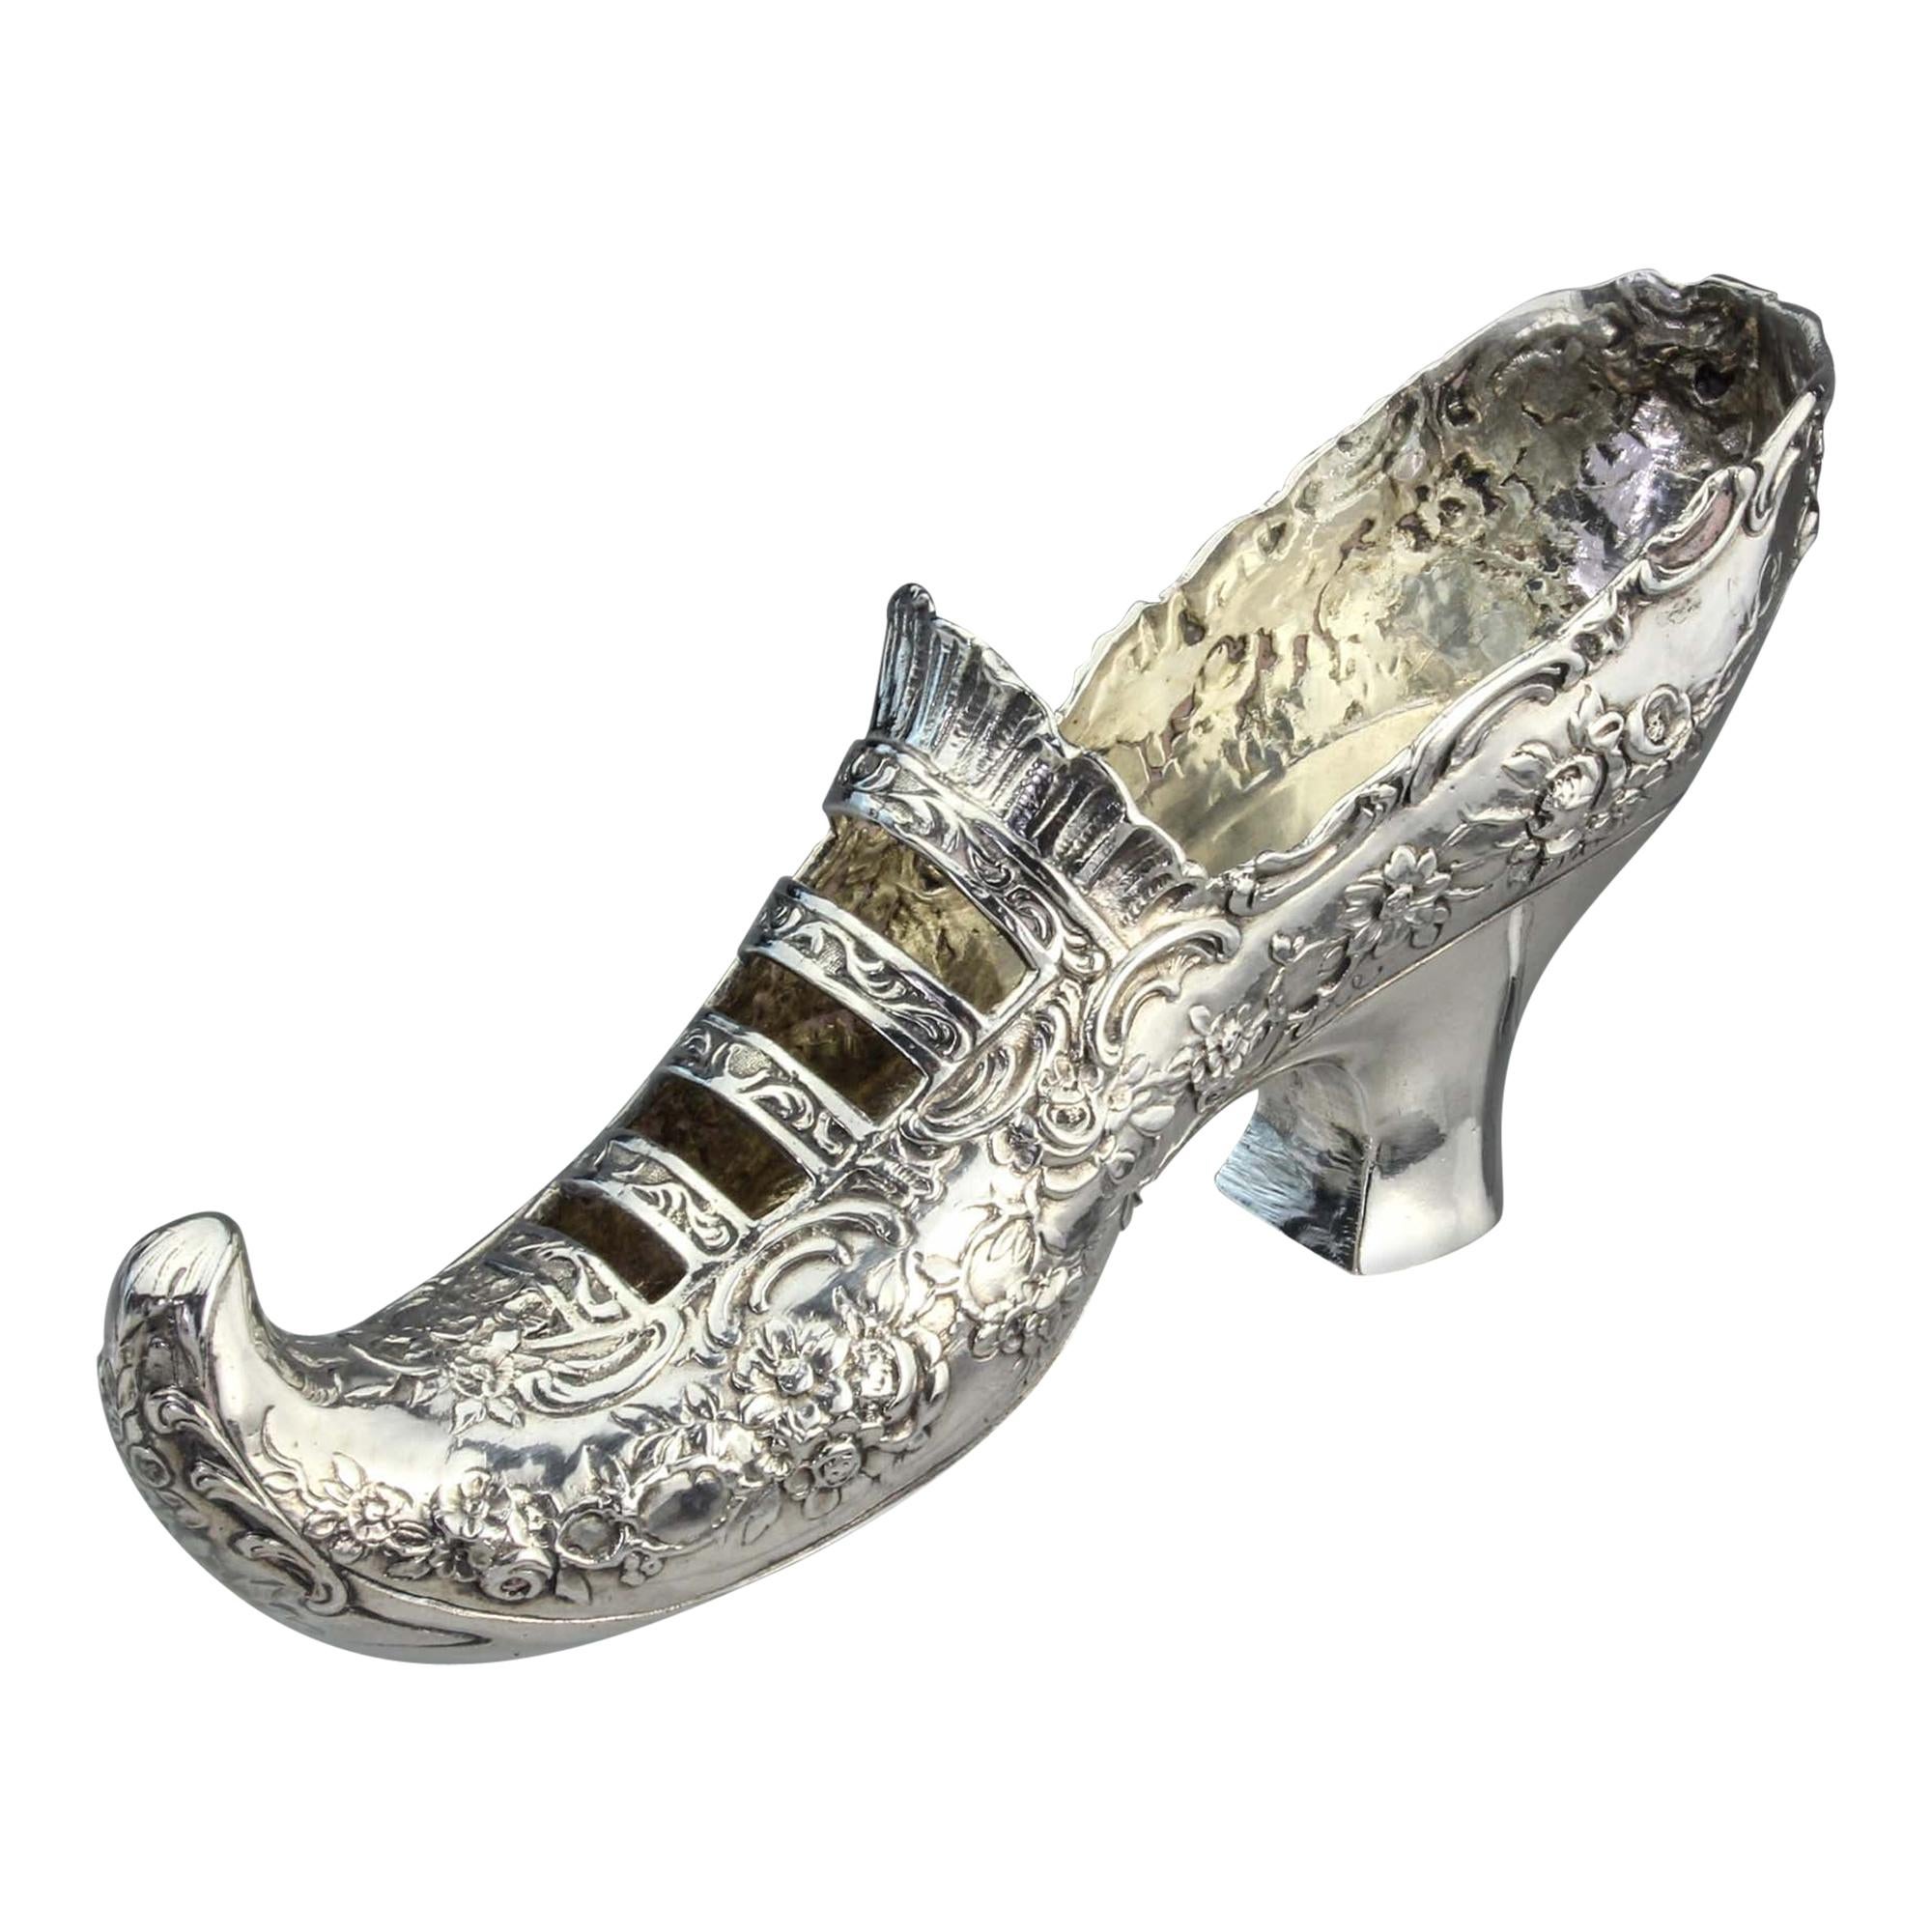 Antique fin du 19ème siècle, allemand 930, argent, chaussure de dame rococo avec orteil de lutin